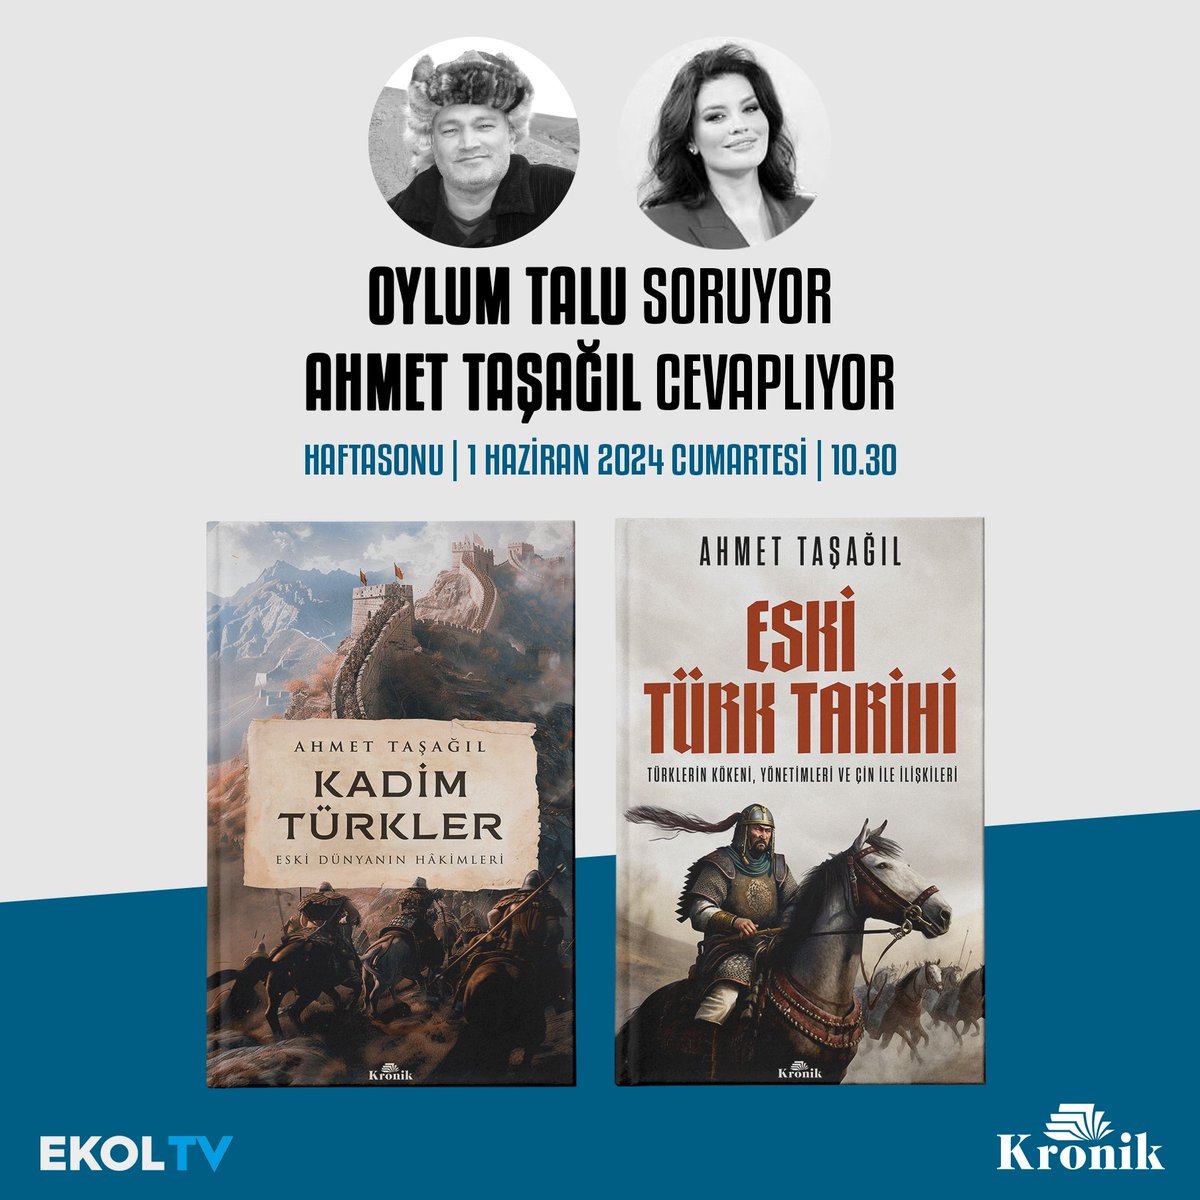 TV | Yazarımız @proftaal, Oylum Talu ile Haftasonu programına konuk oluyor. @Oylumtalub soruyor, Ahmet Taşağıl cevaplıyor. 1 Haziran Cumartesi sabah 10.30'da @ekoltvv'de.